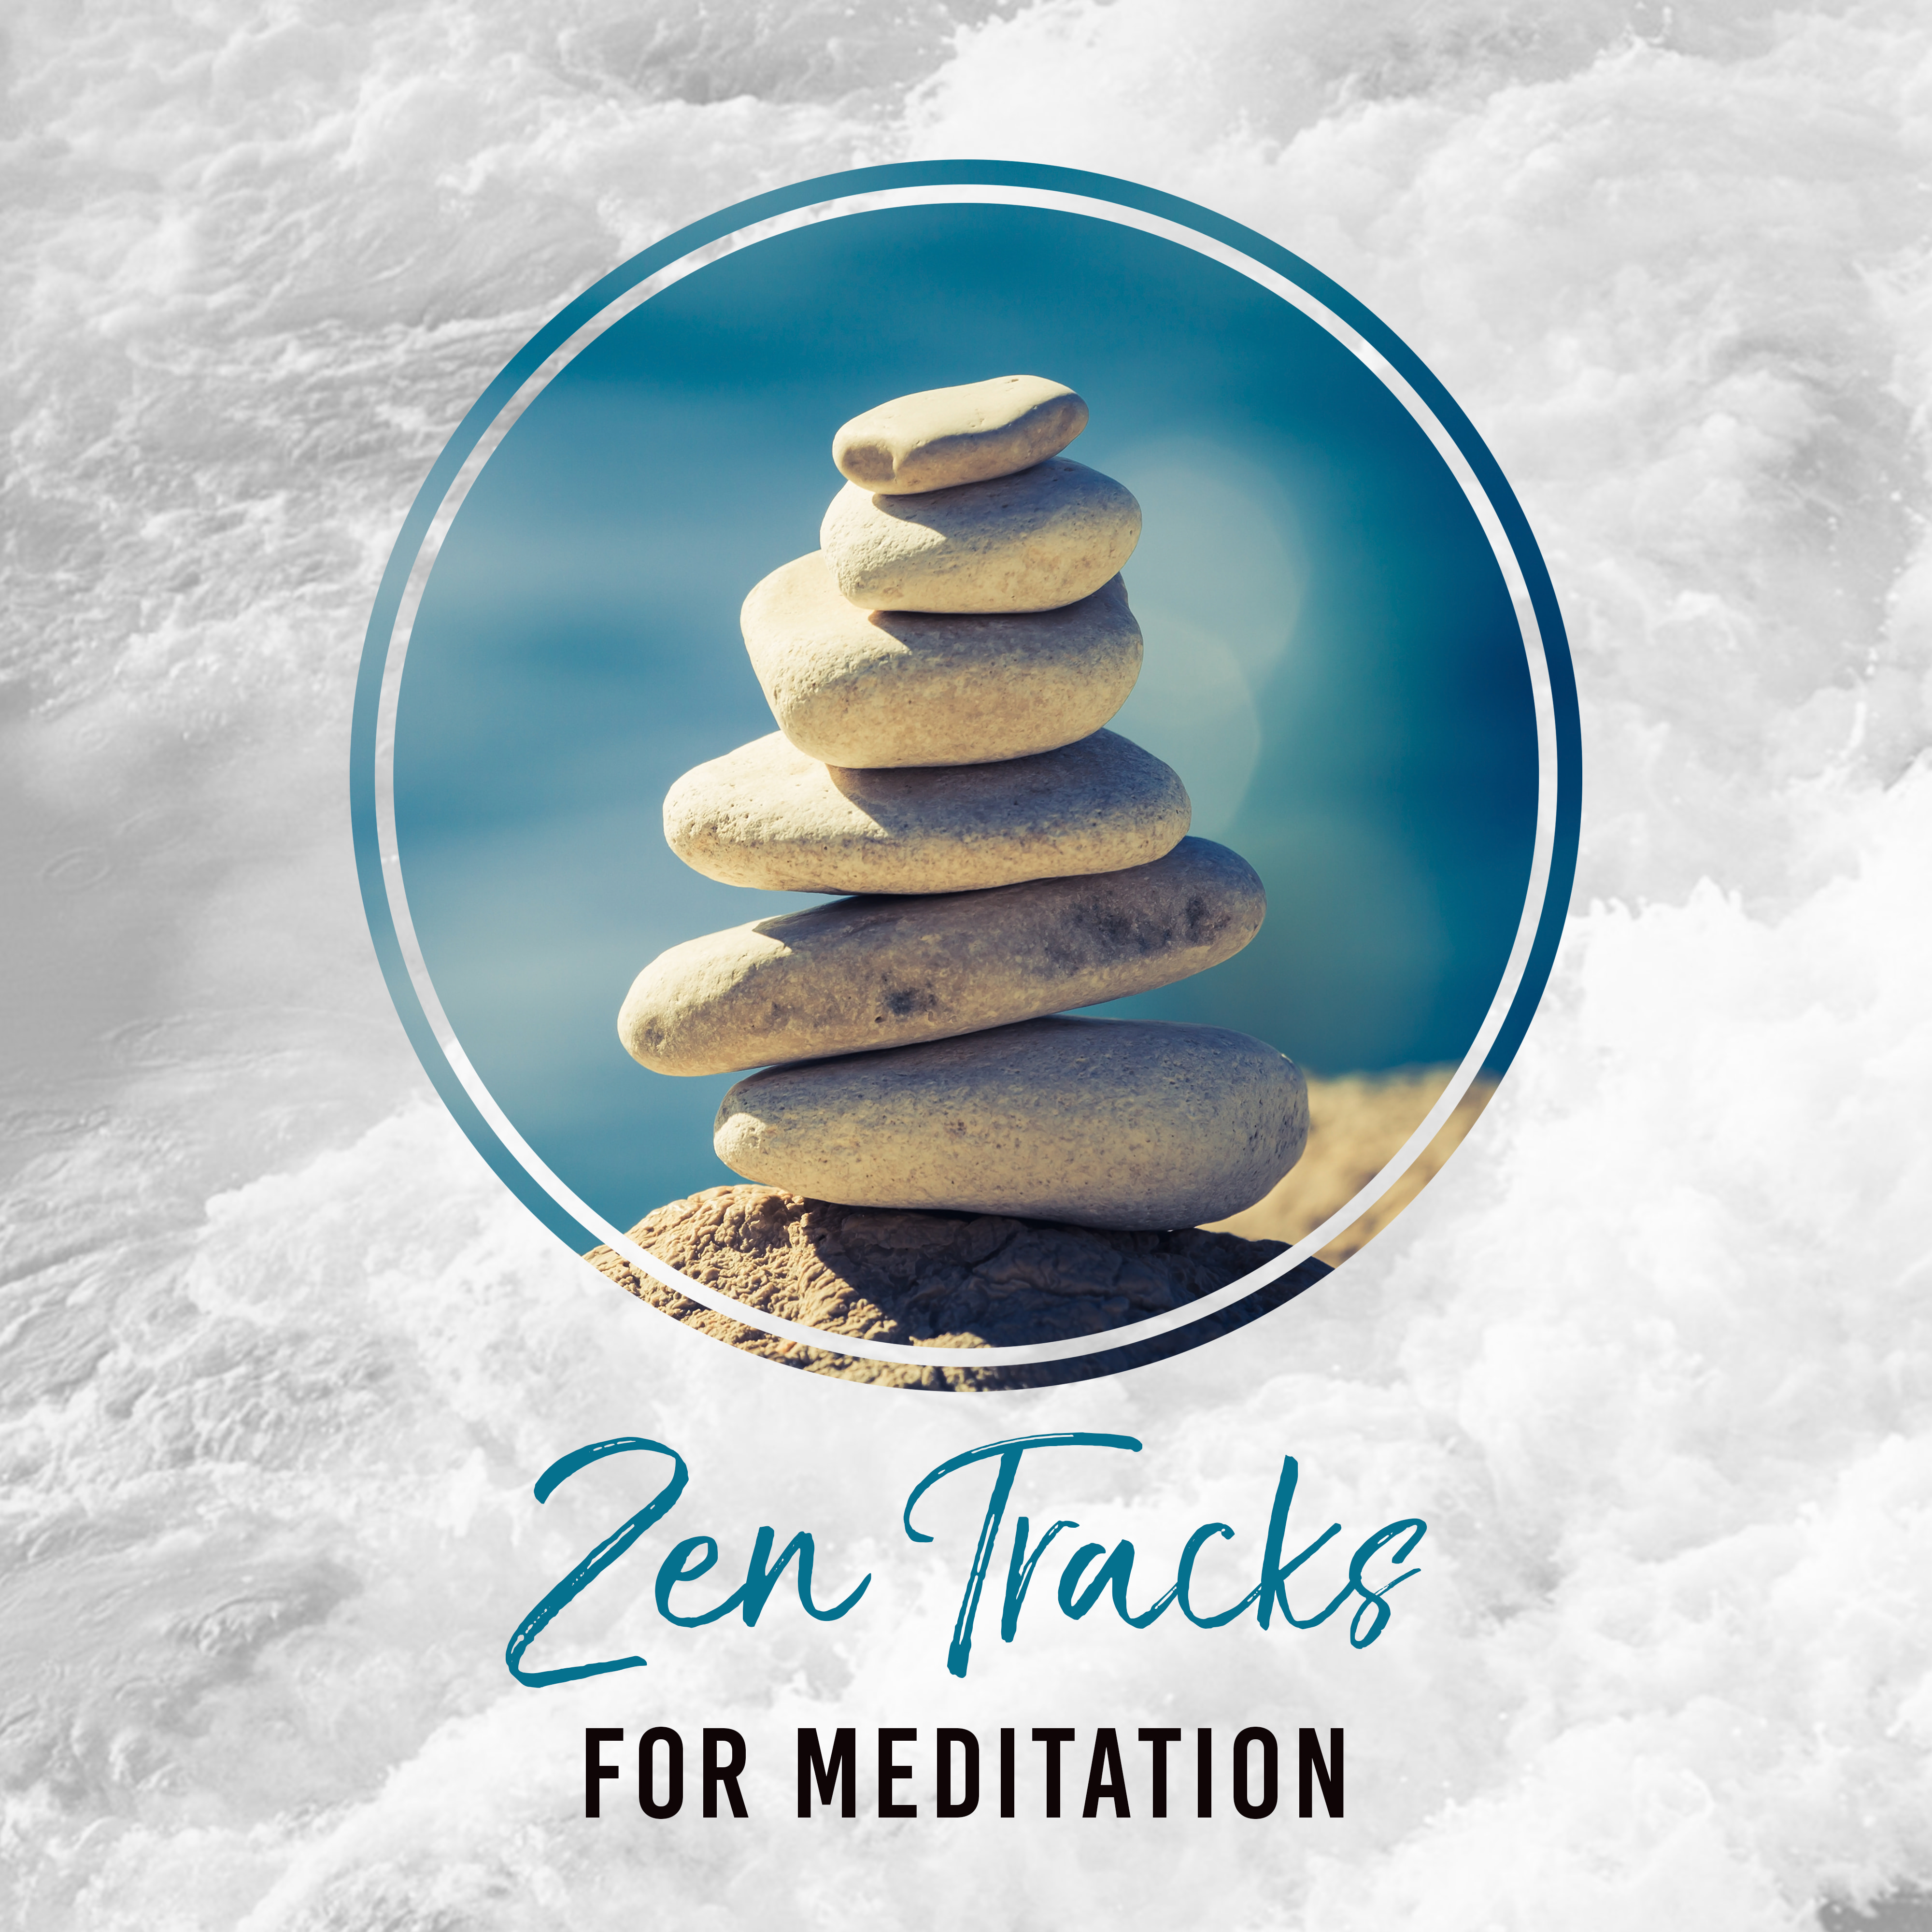 Zen Tracks for Meditation